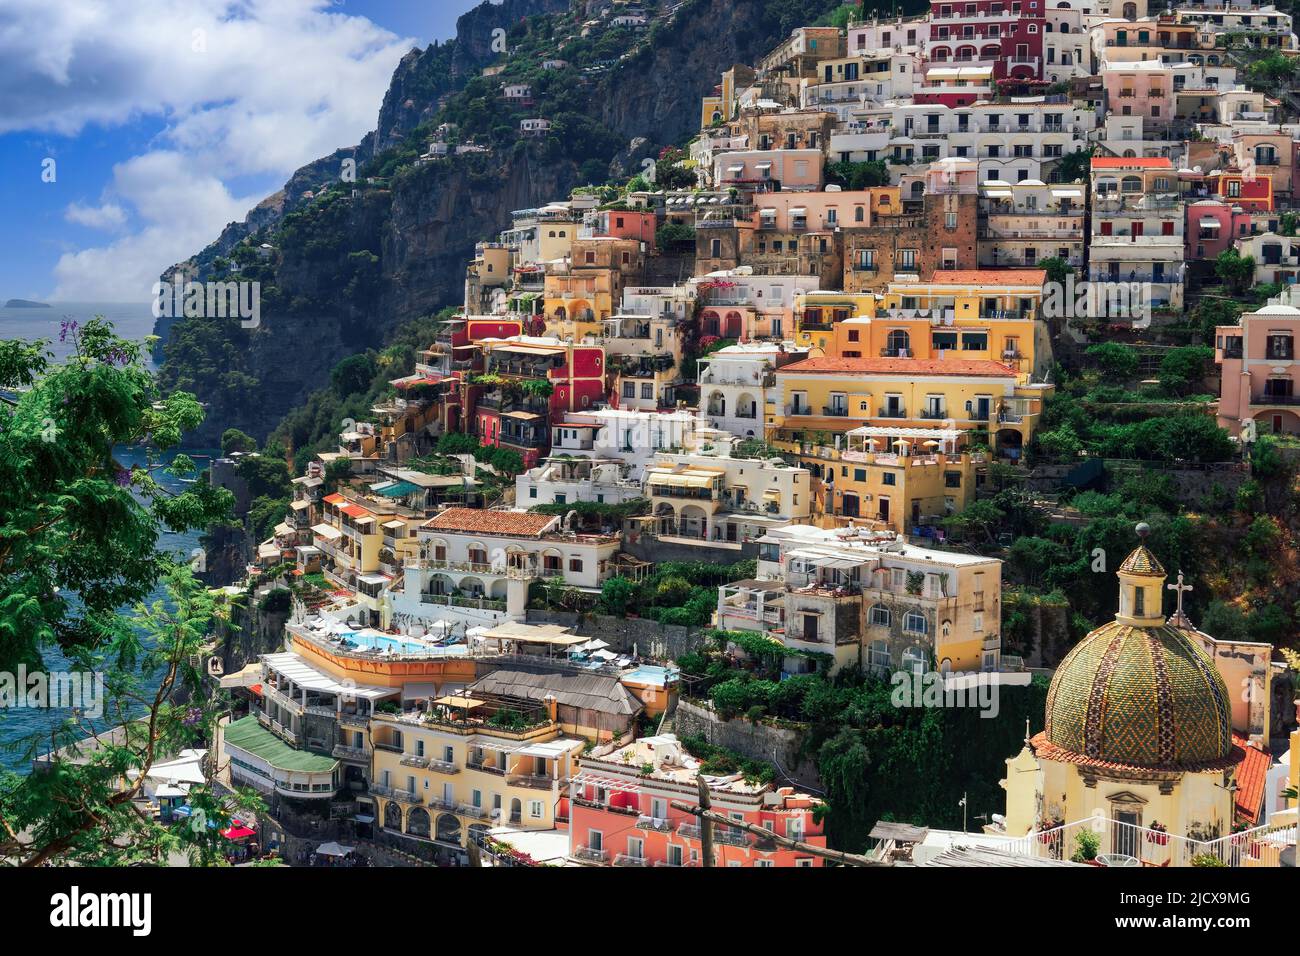 Vista de la colina de la ciudad de Positano con edificios bajos y coloridos sobre la línea del mar, Positano, Costa de Amalfi, Patrimonio de la Humanidad de la UNESCO, Campania, Italia Foto de stock